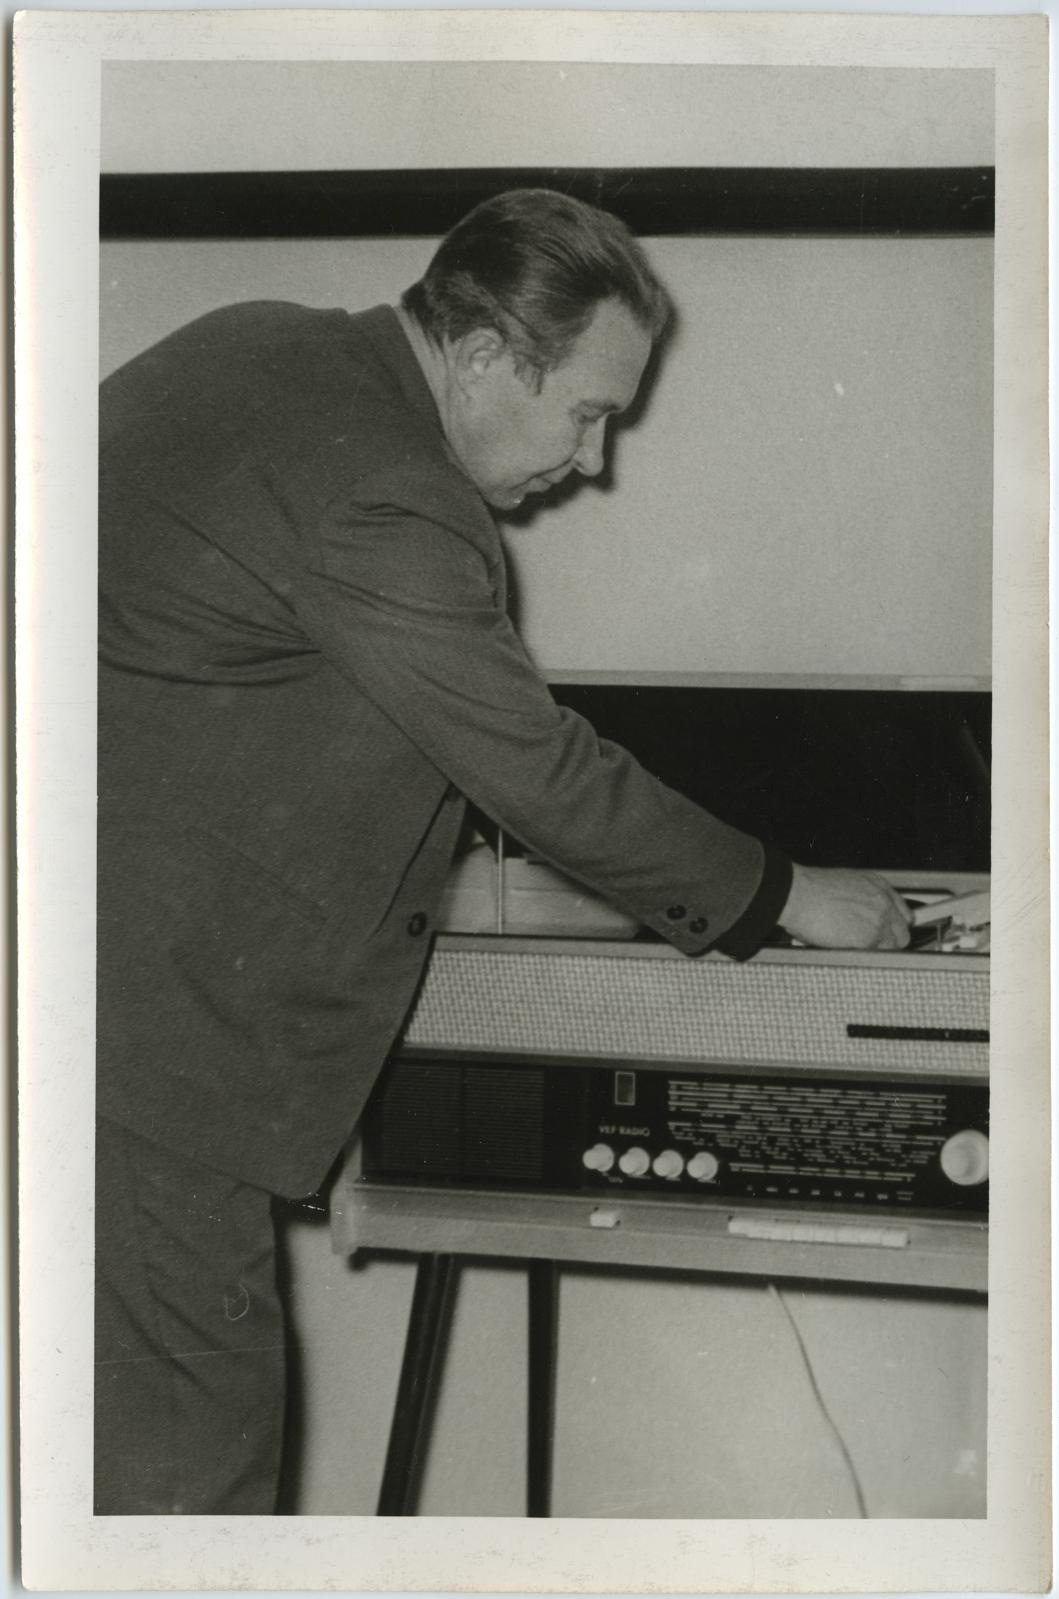 Loeng muusikast "Teisest Maailmasõjast tänapäevani" (tsüklist "Kunstnik ja tema kaasaeg") lektooriumis 25. märtsil 1969. Lektor Aare Allikvee.